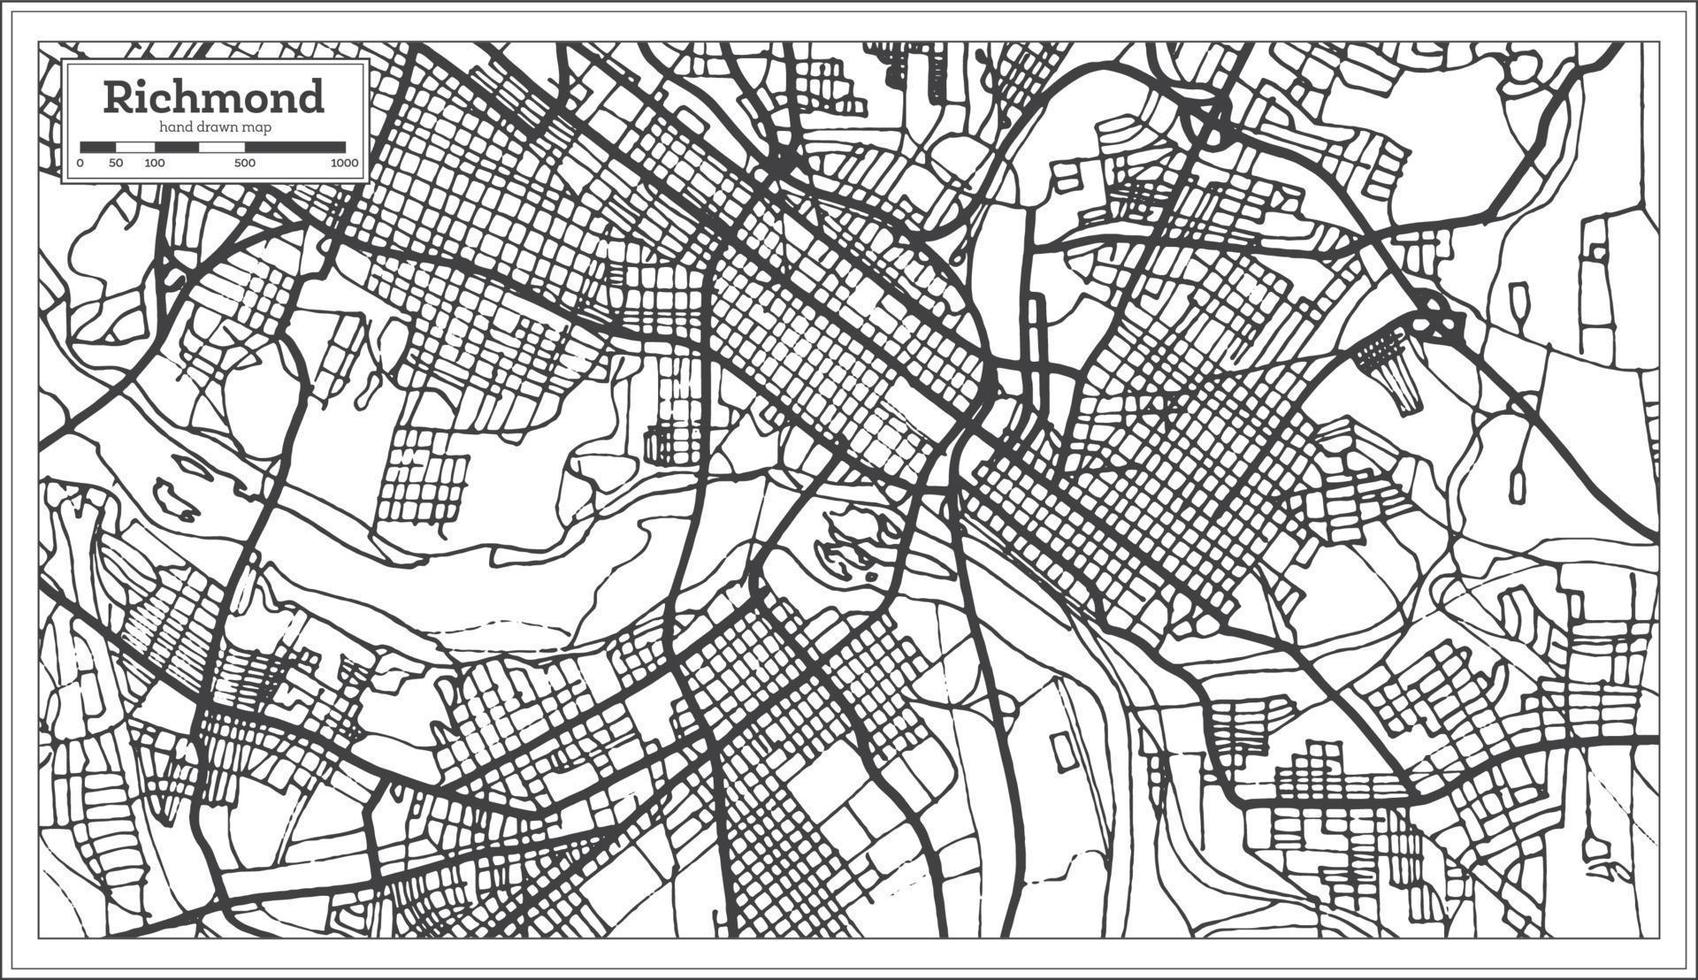 Richmond Virginia Verenigde Staten van Amerika stad kaart in retro stijl. schets kaart. vector